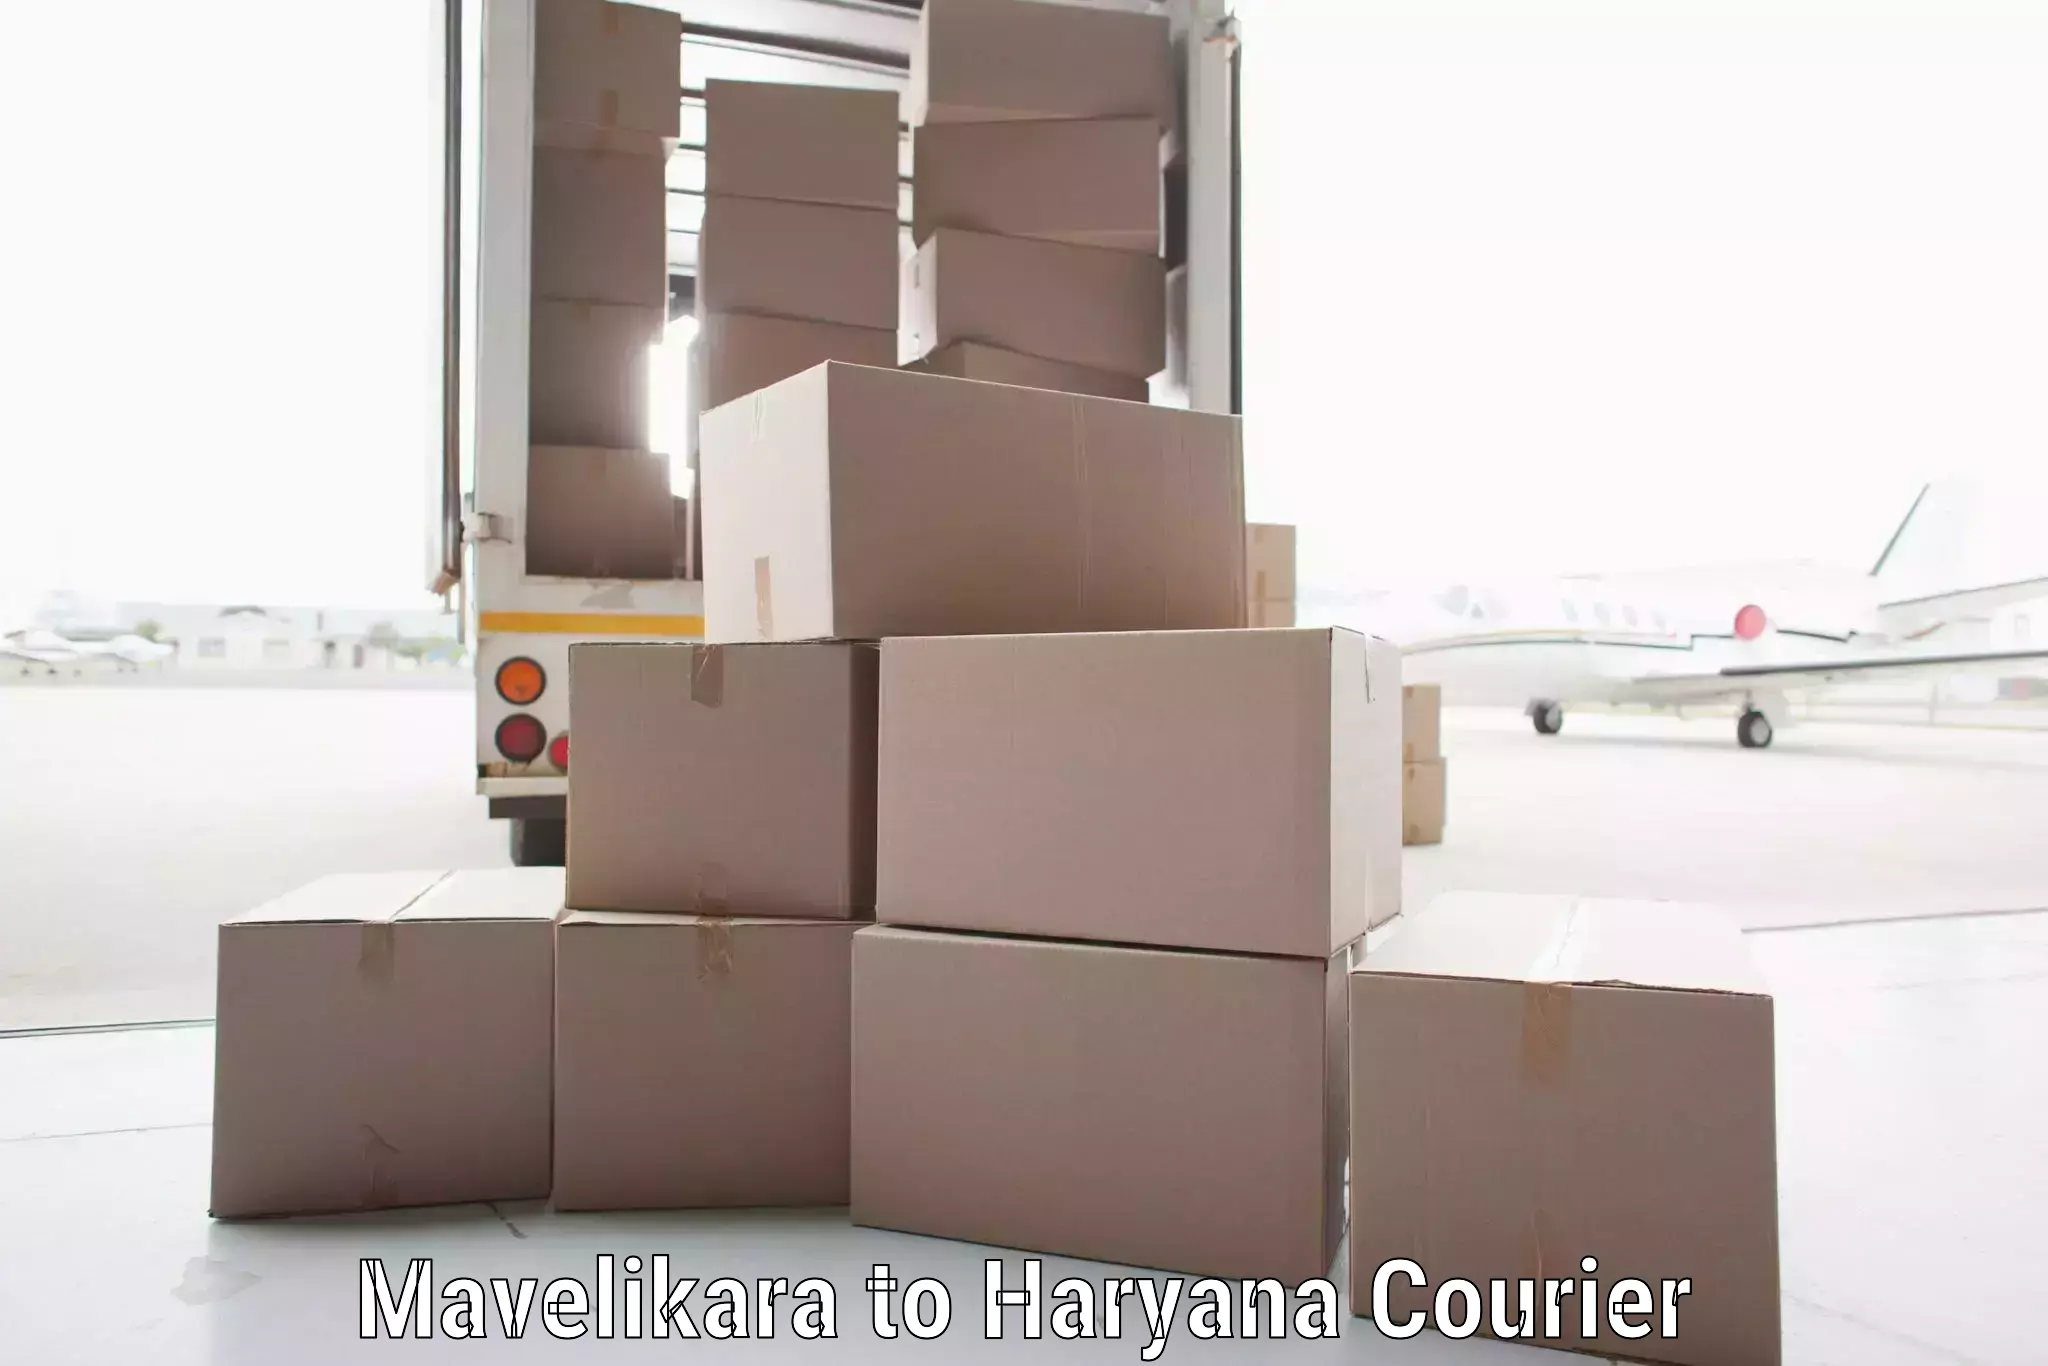 Door-to-door freight service Mavelikara to Sohna